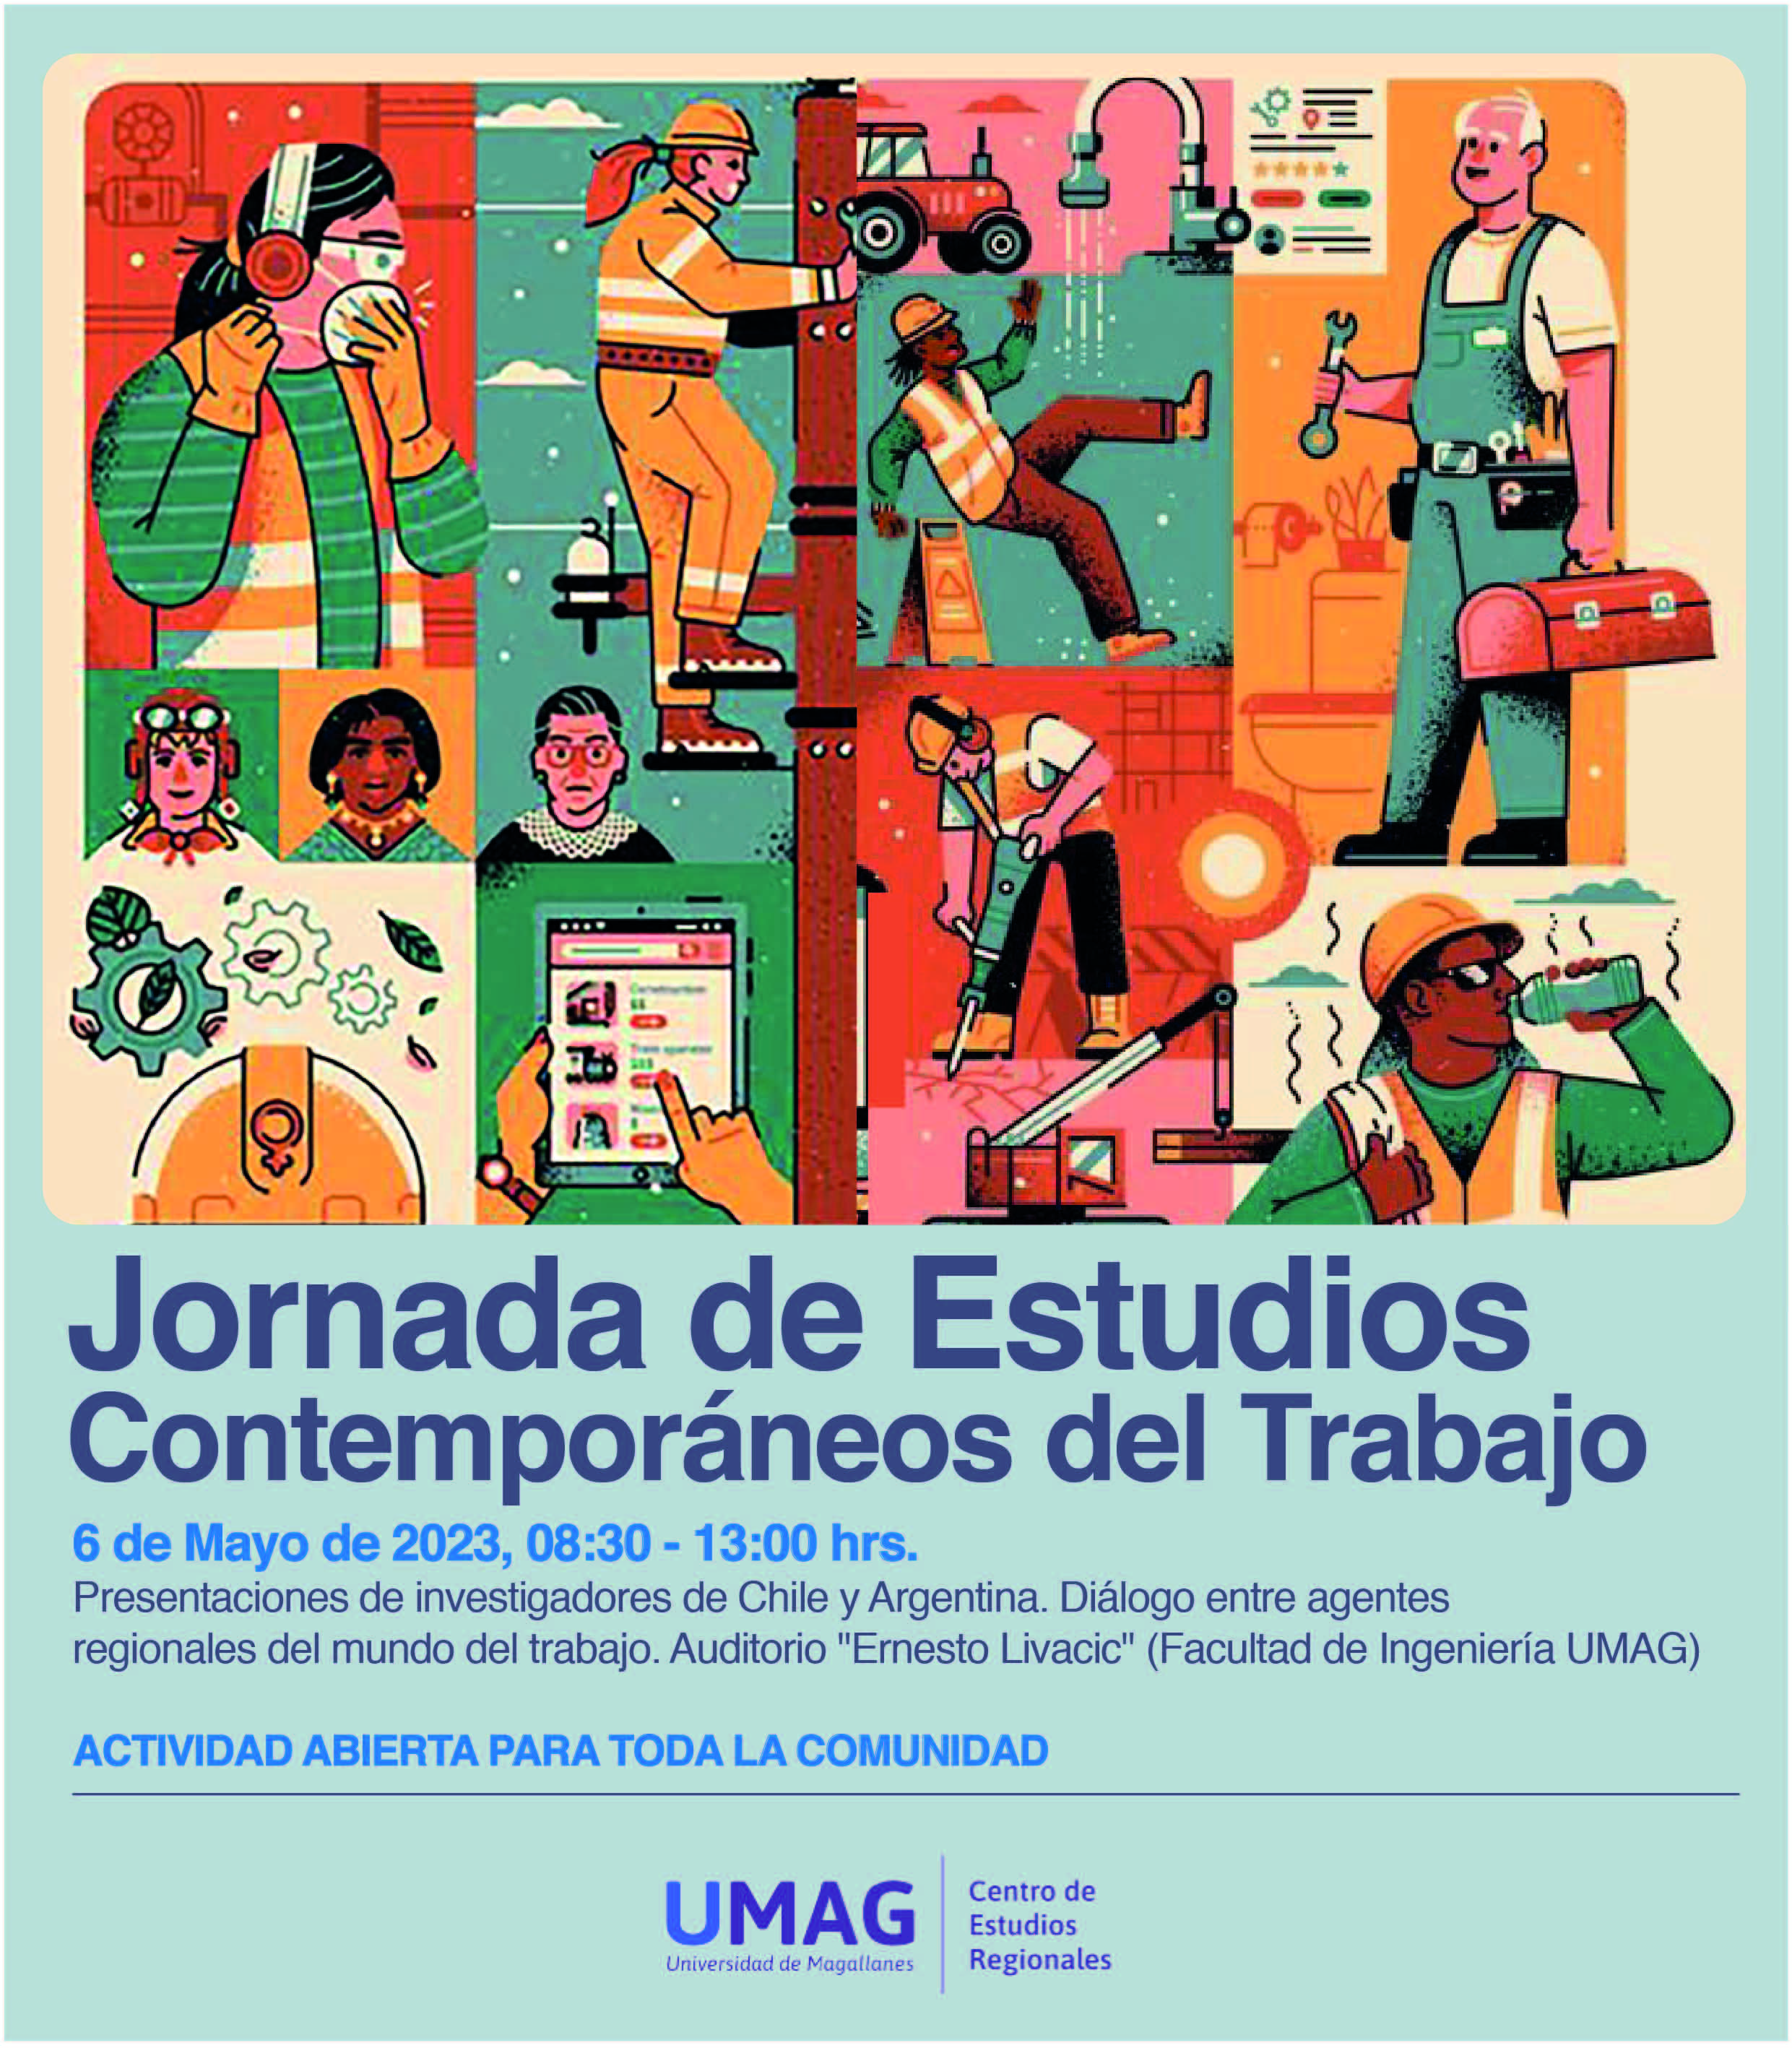 Historia y actualidad de las y los trabajadores de la Patagonia serán analizados en Jornadas de Estudios del Trabajo